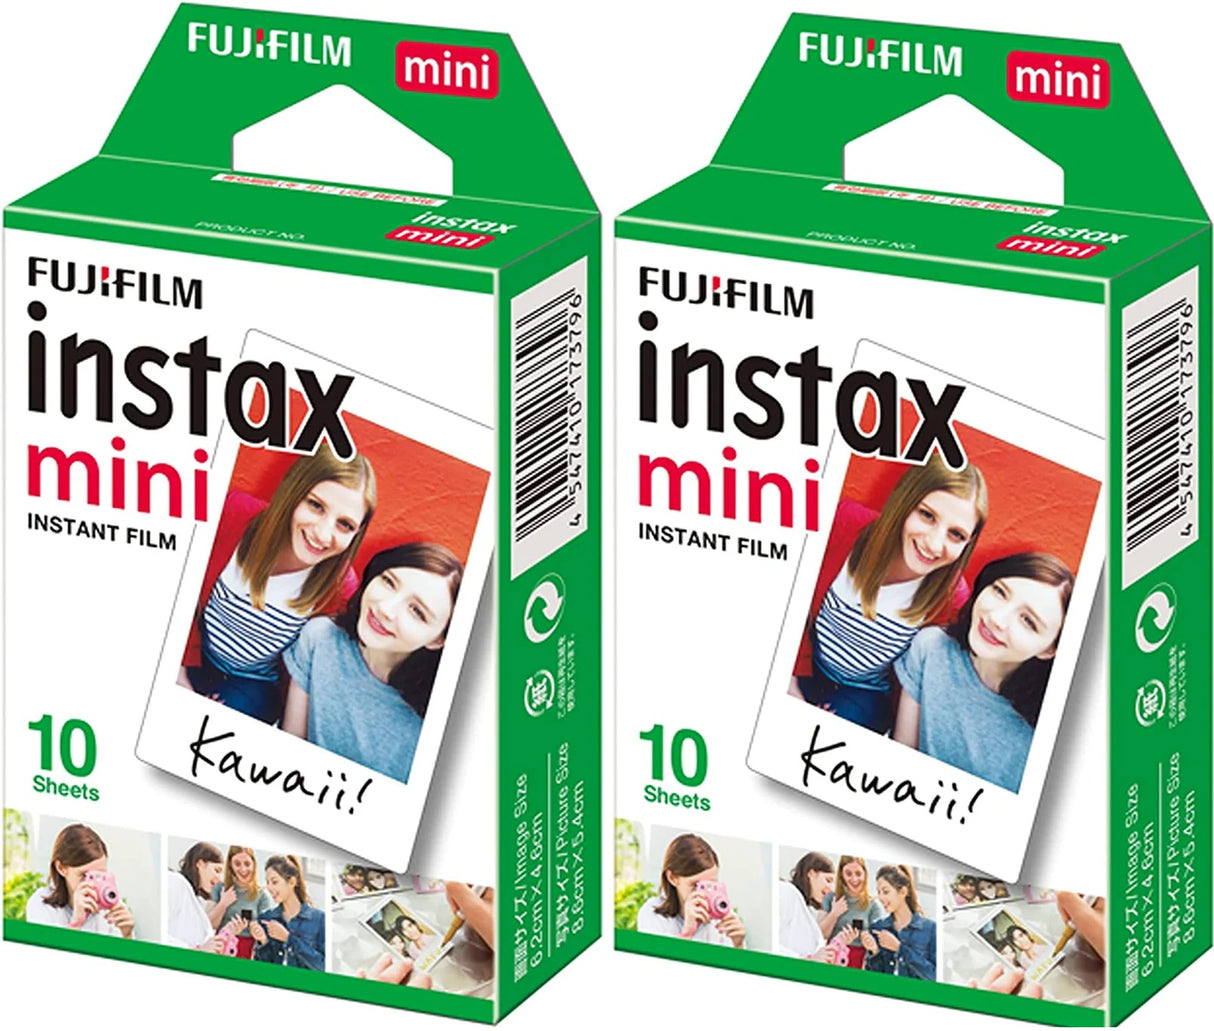 Fujifilm Instax Mini Film 10 Shot Pack x 2 Bundle